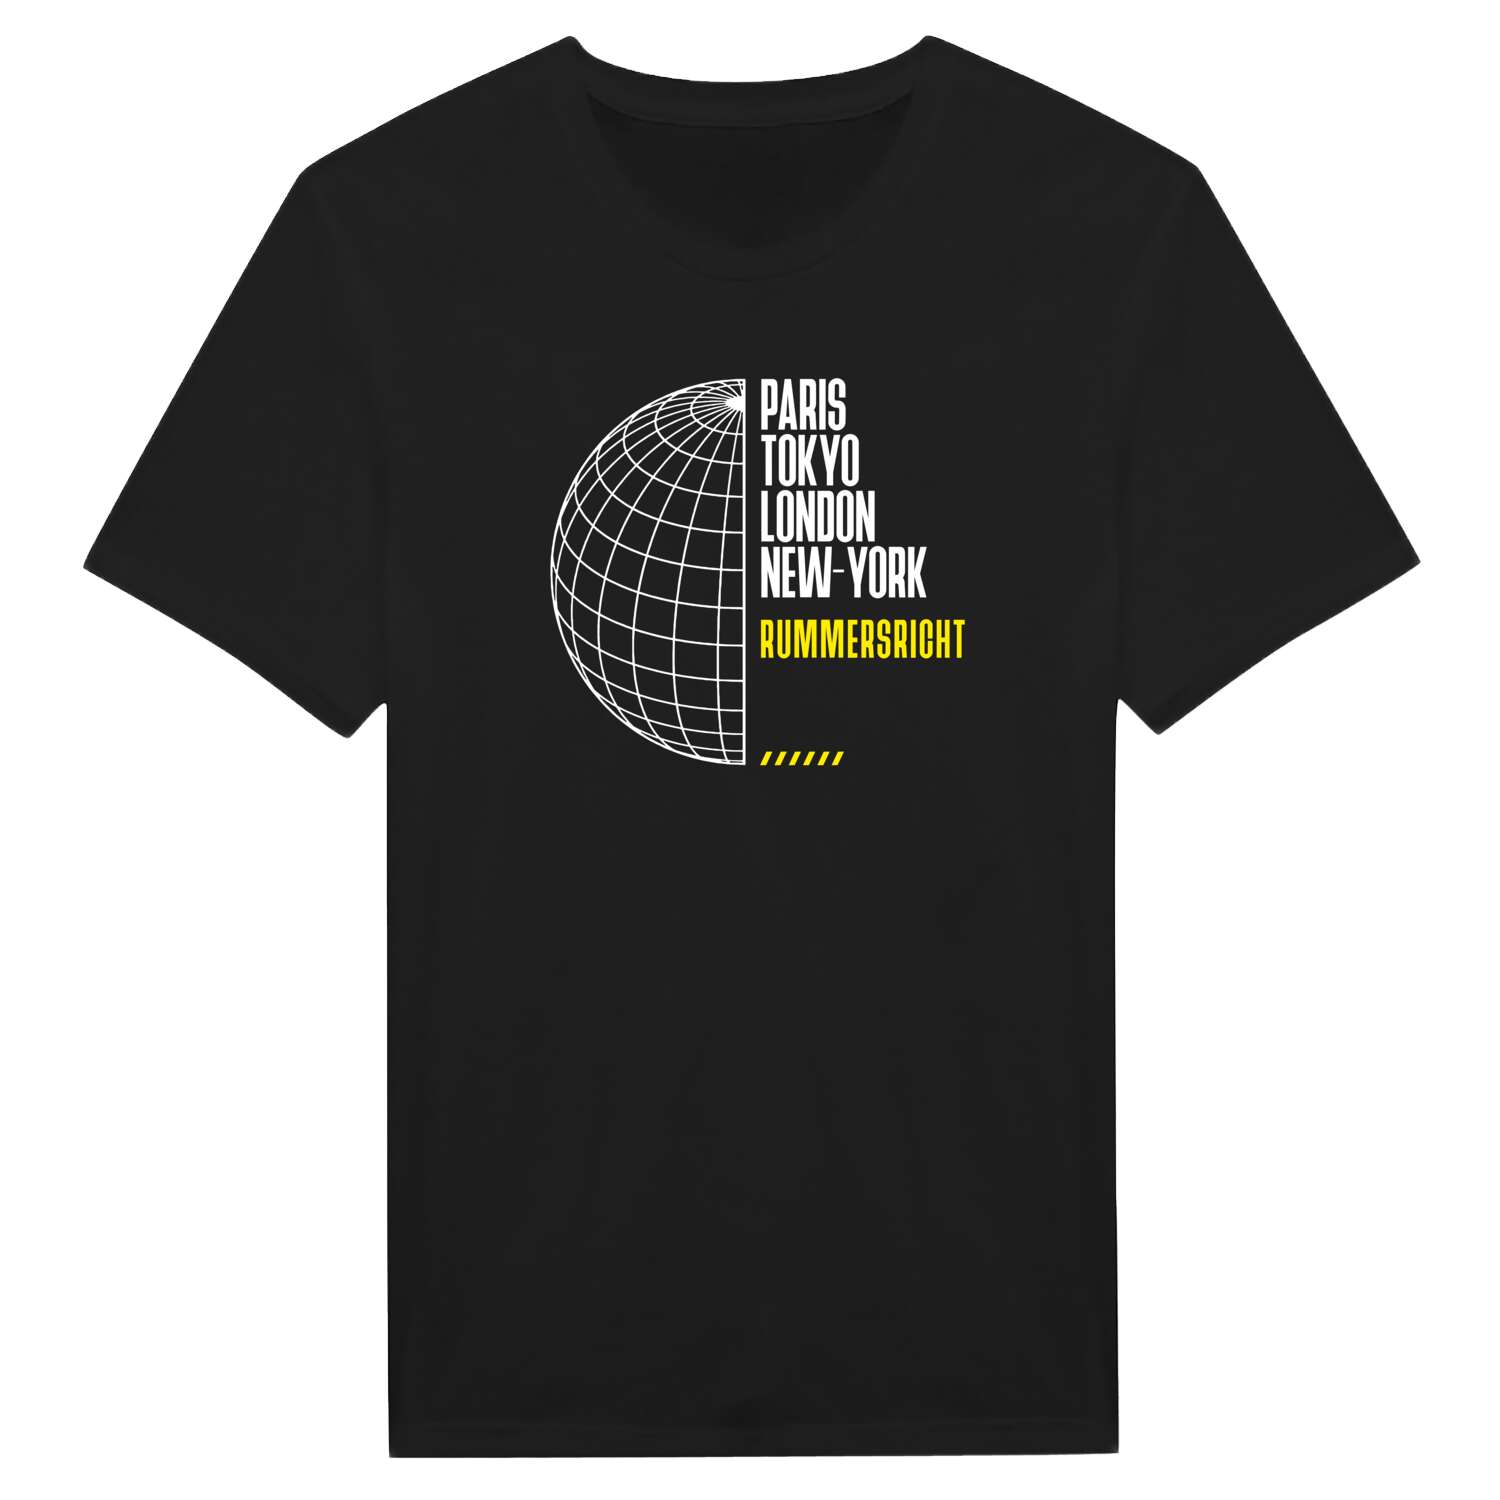 Rummersricht T-Shirt »Paris Tokyo London«